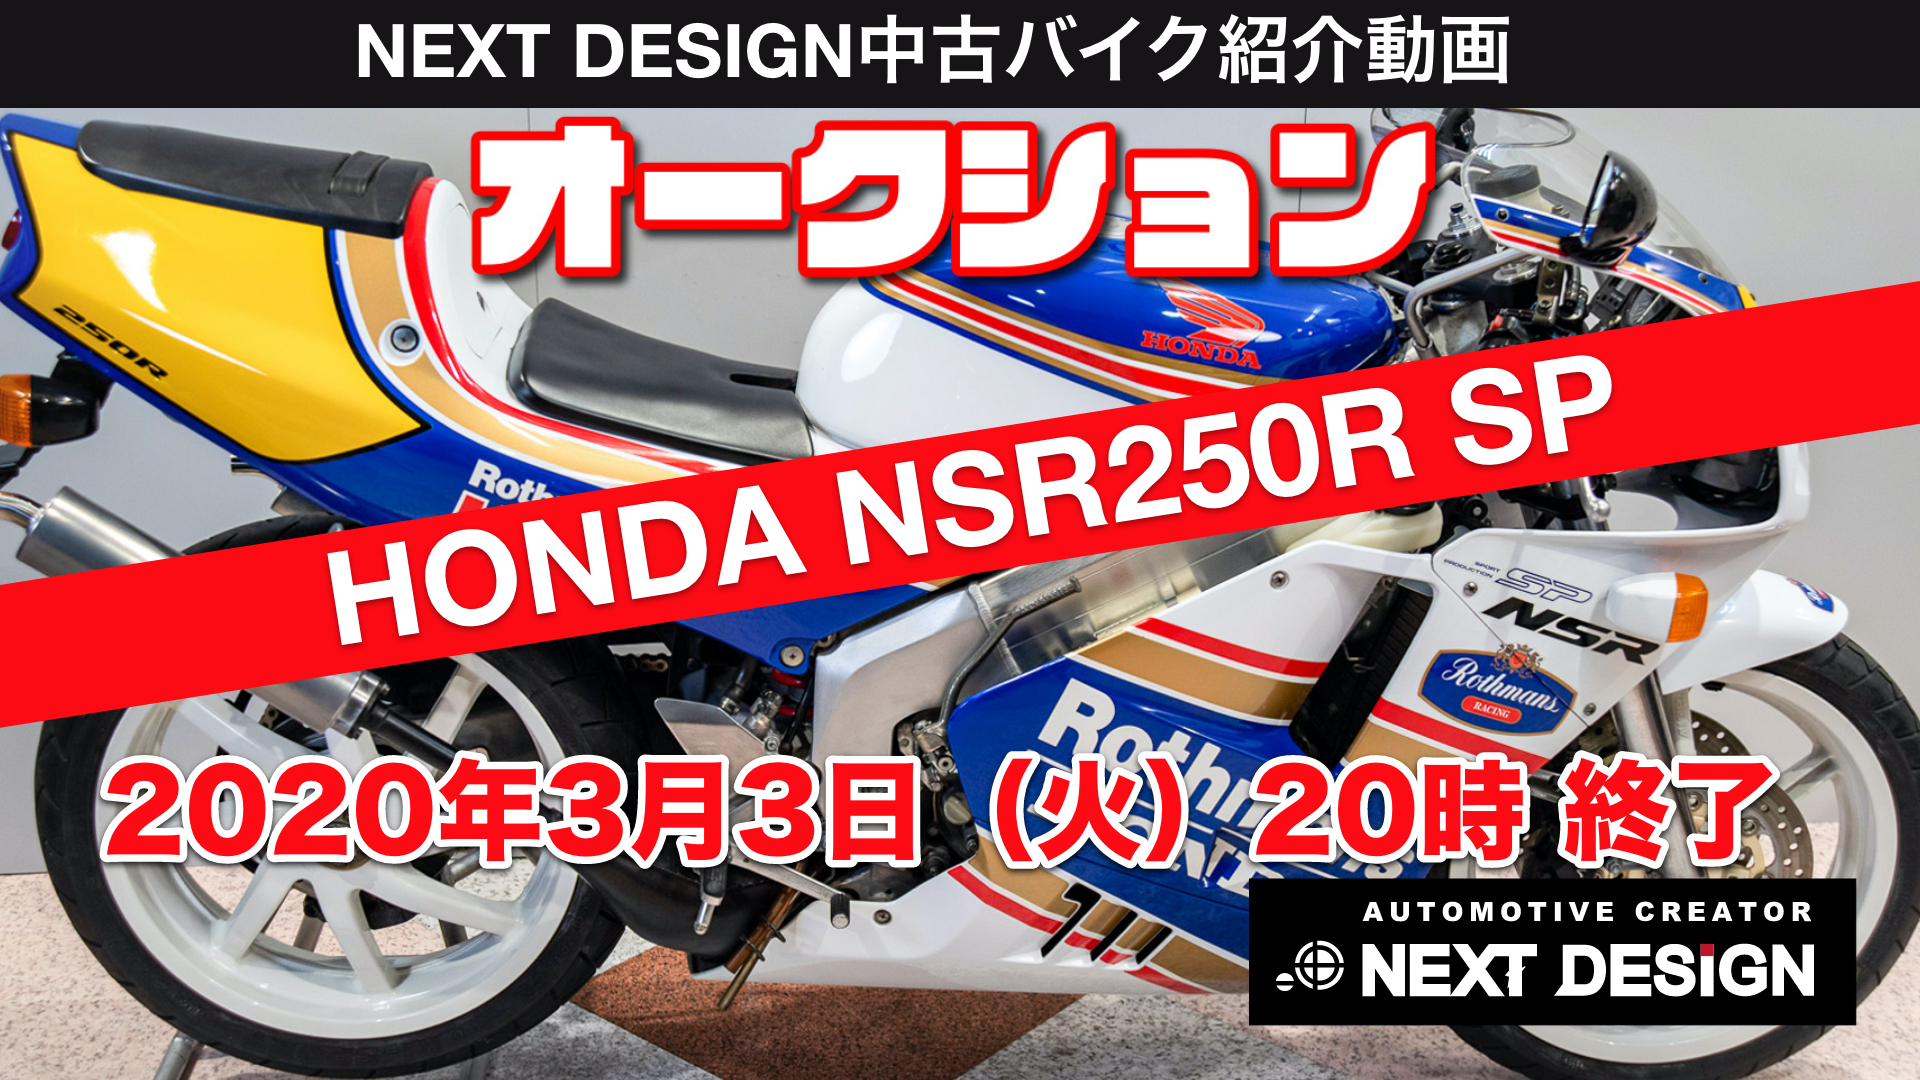 Nsr250r Sp28ロスマンズ オークション販売 ネクストデザイン オフィシャルサイト